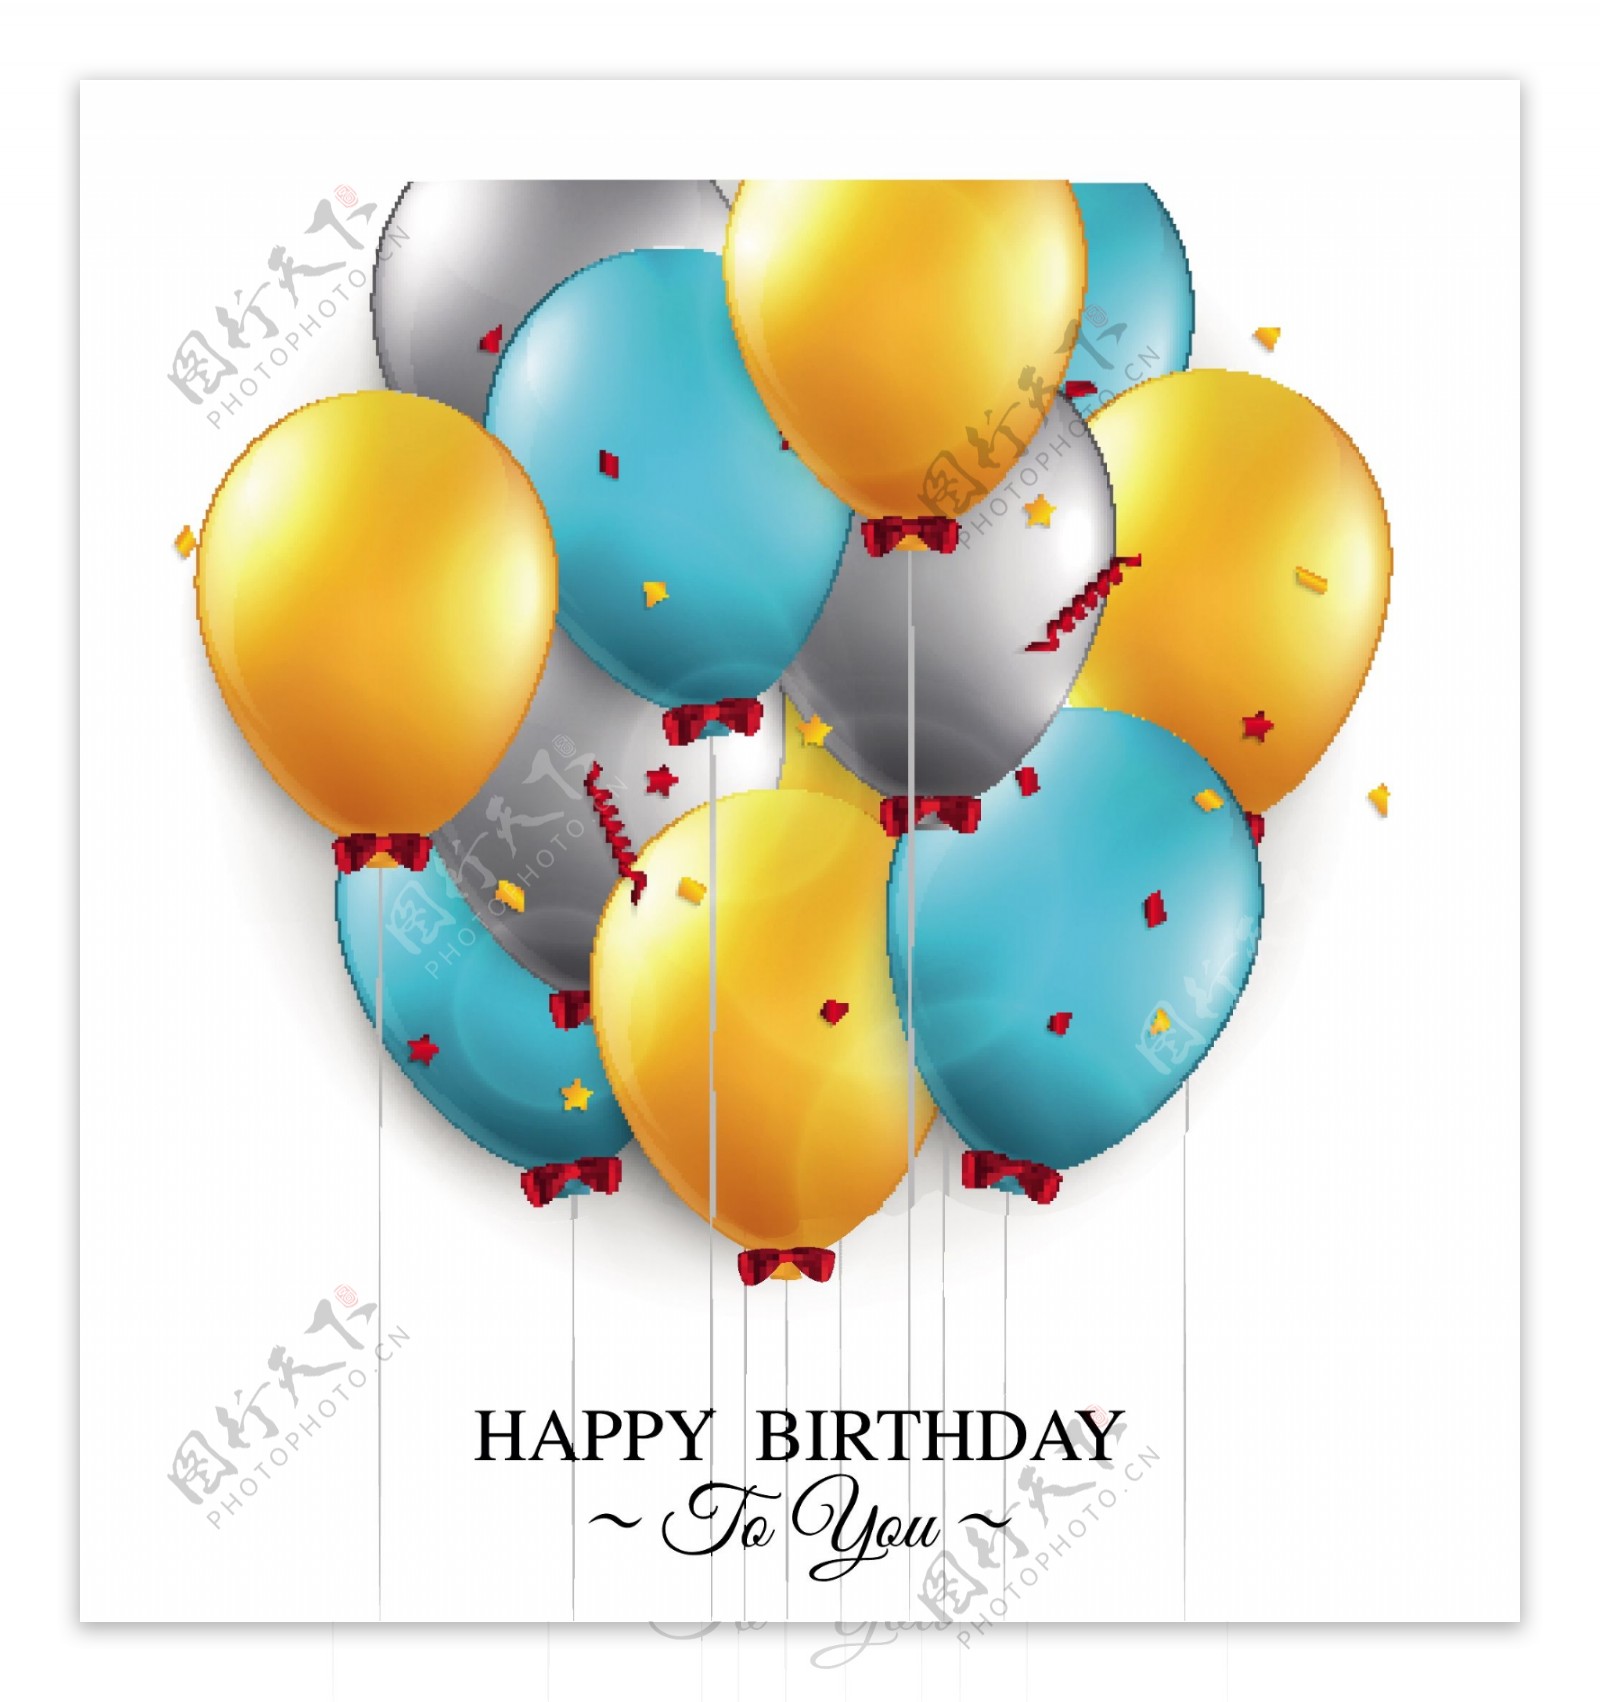 彩色气球生日卡片矢量素材